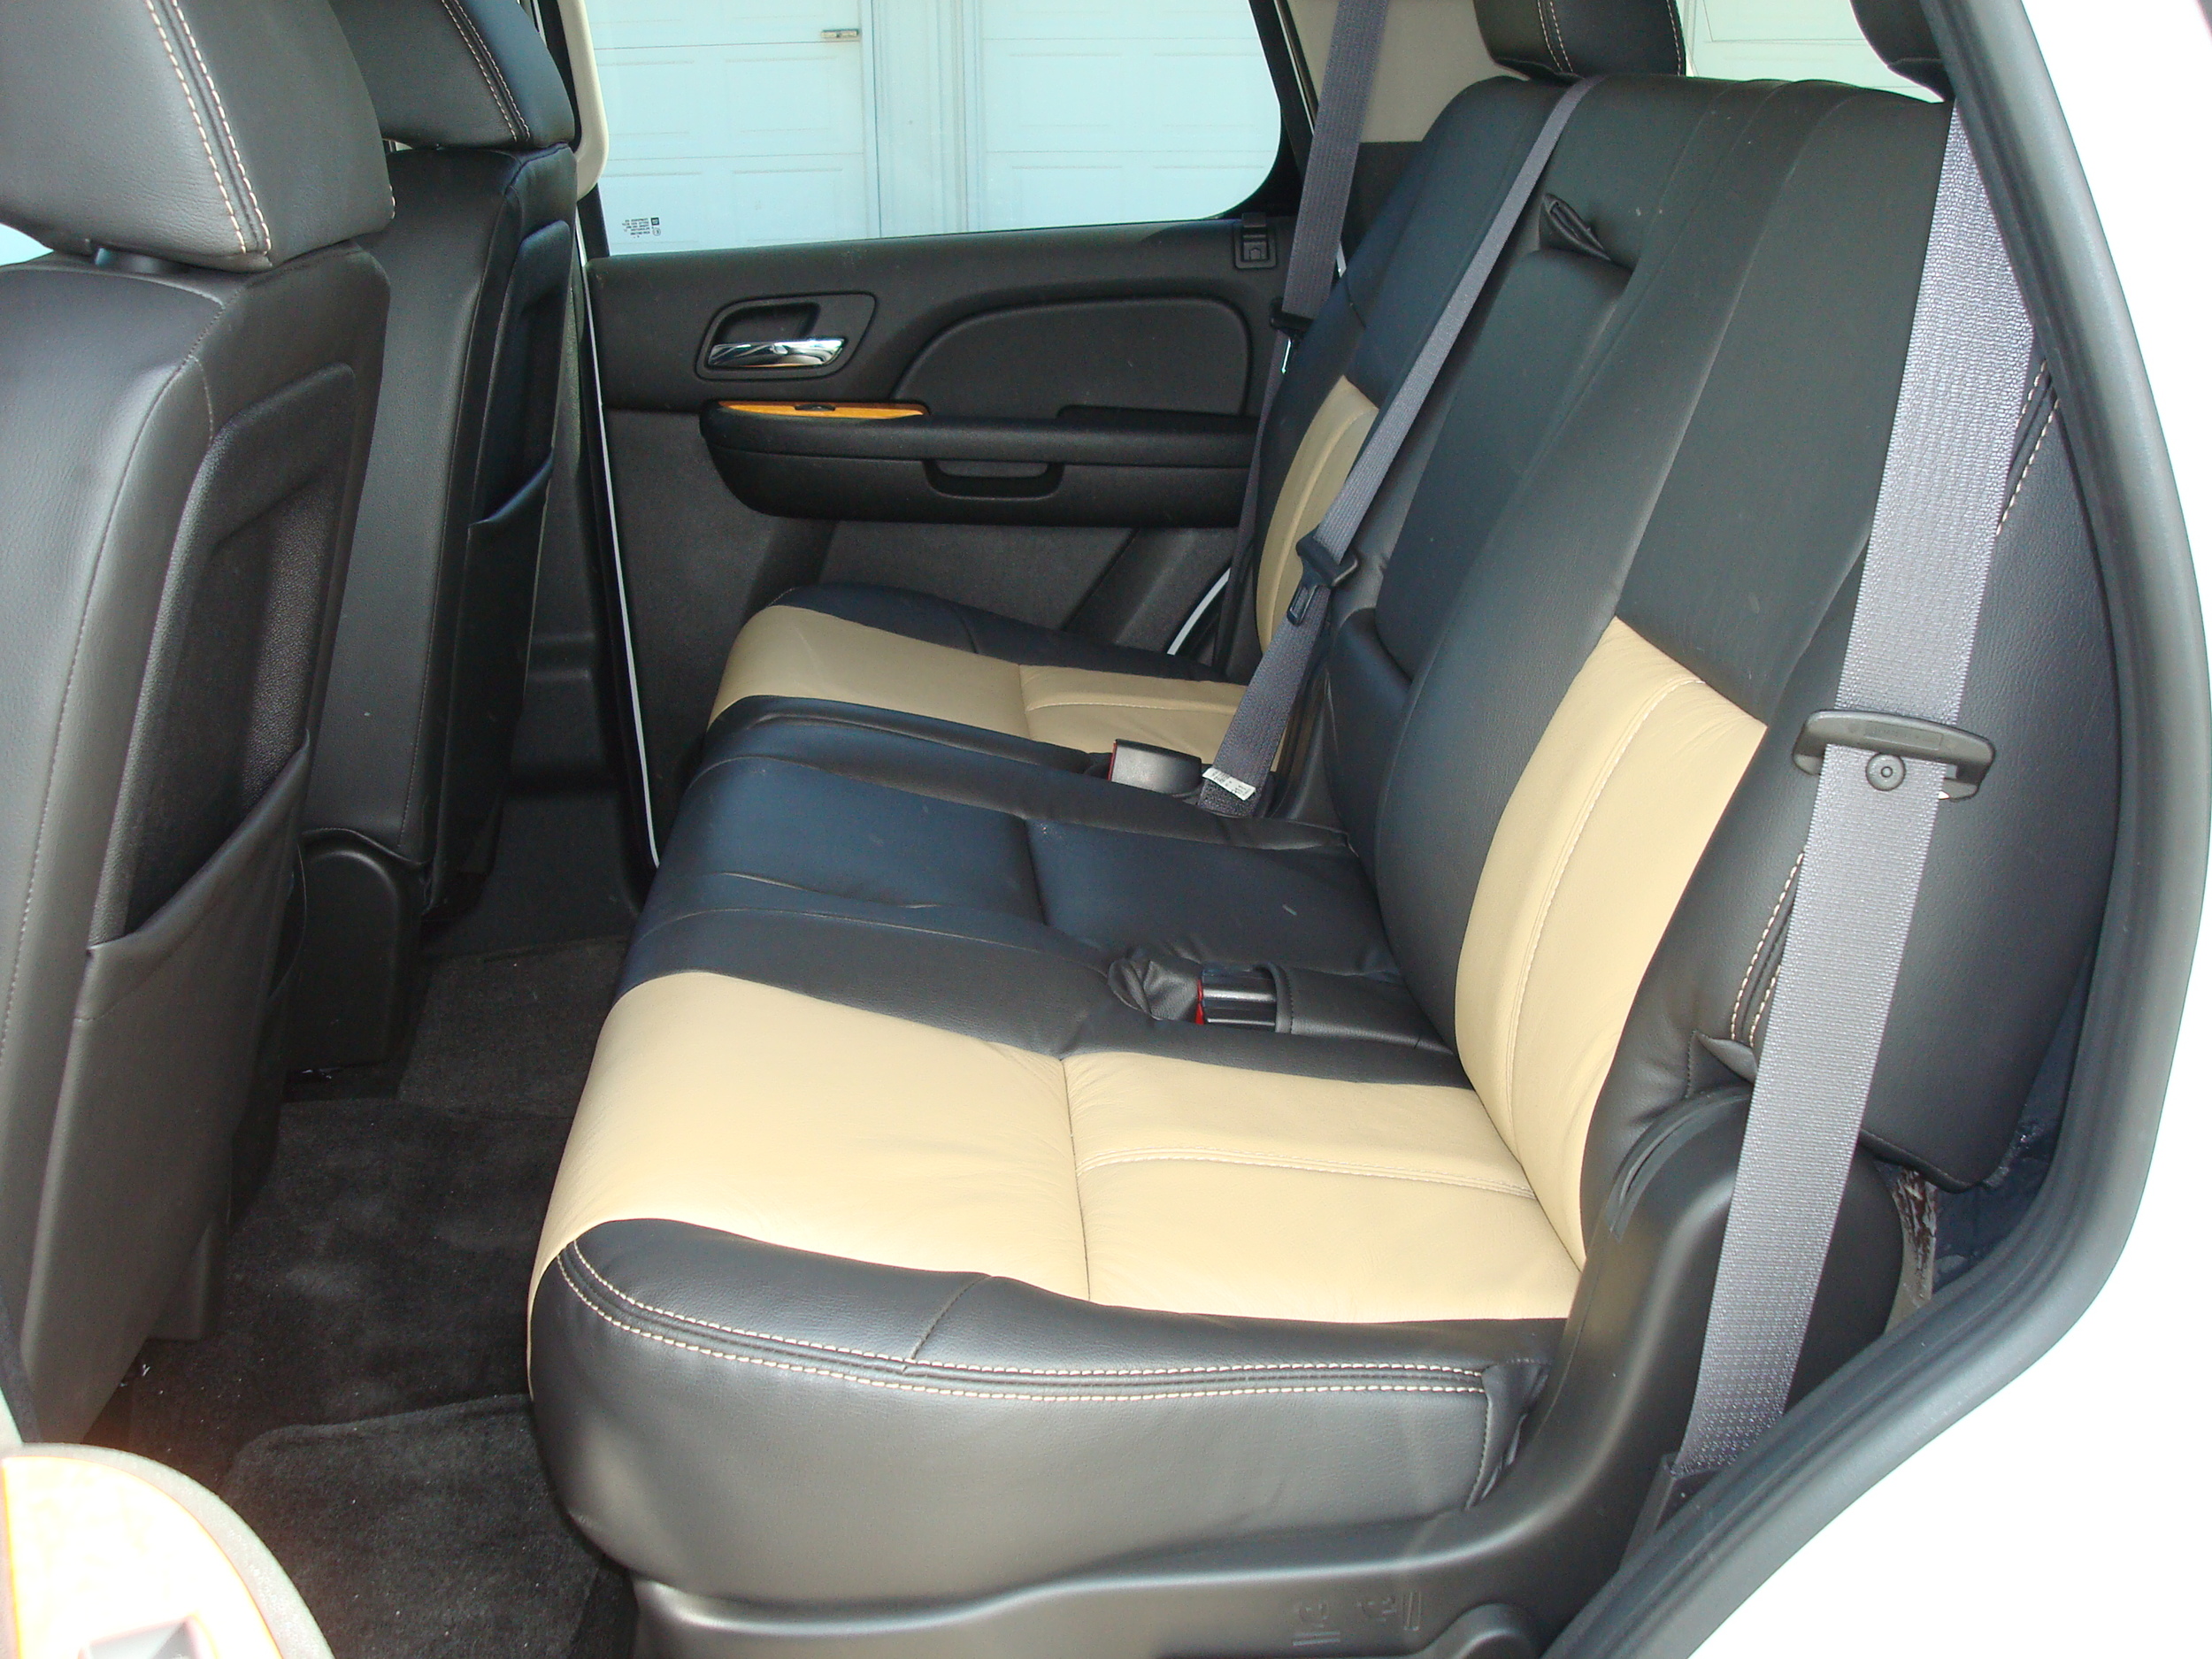 2011 Tahoe - Katzkin leather seat upgrade